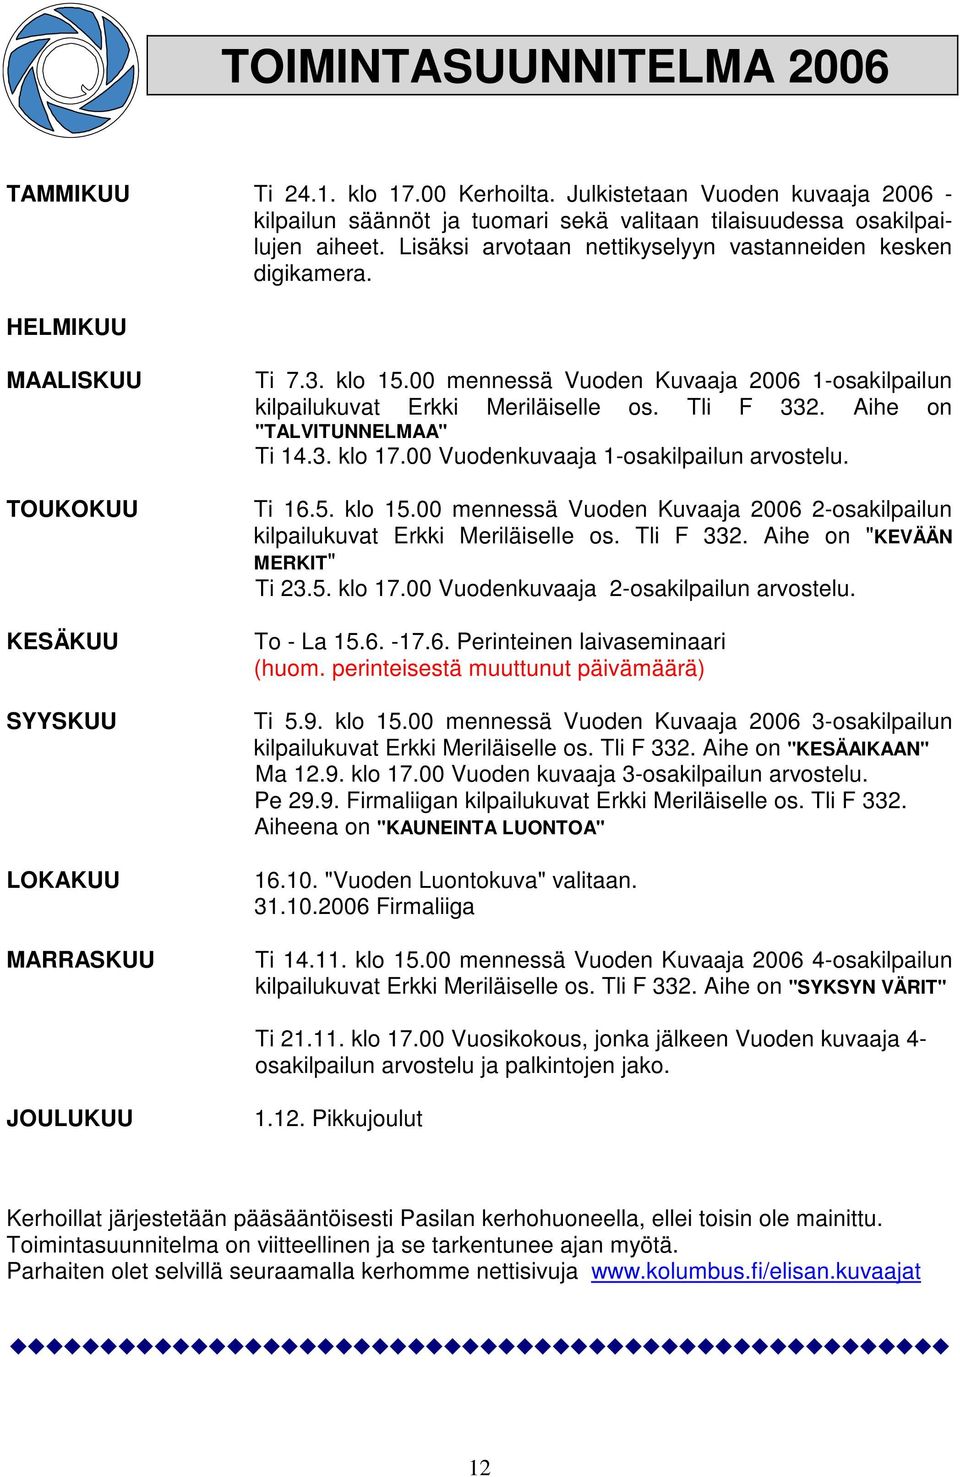 00 mennessä Vuoden Kuvaaja 2006 1-osakilpailun kilpailukuvat Erkki Meriläiselle os. Tli F 332. Aihe on "TALVITUNNELMAA" Ti 14.3. klo 17.00 Vuodenkuvaaja 1-osakilpailun arvostelu. Ti 16.5. klo 15.